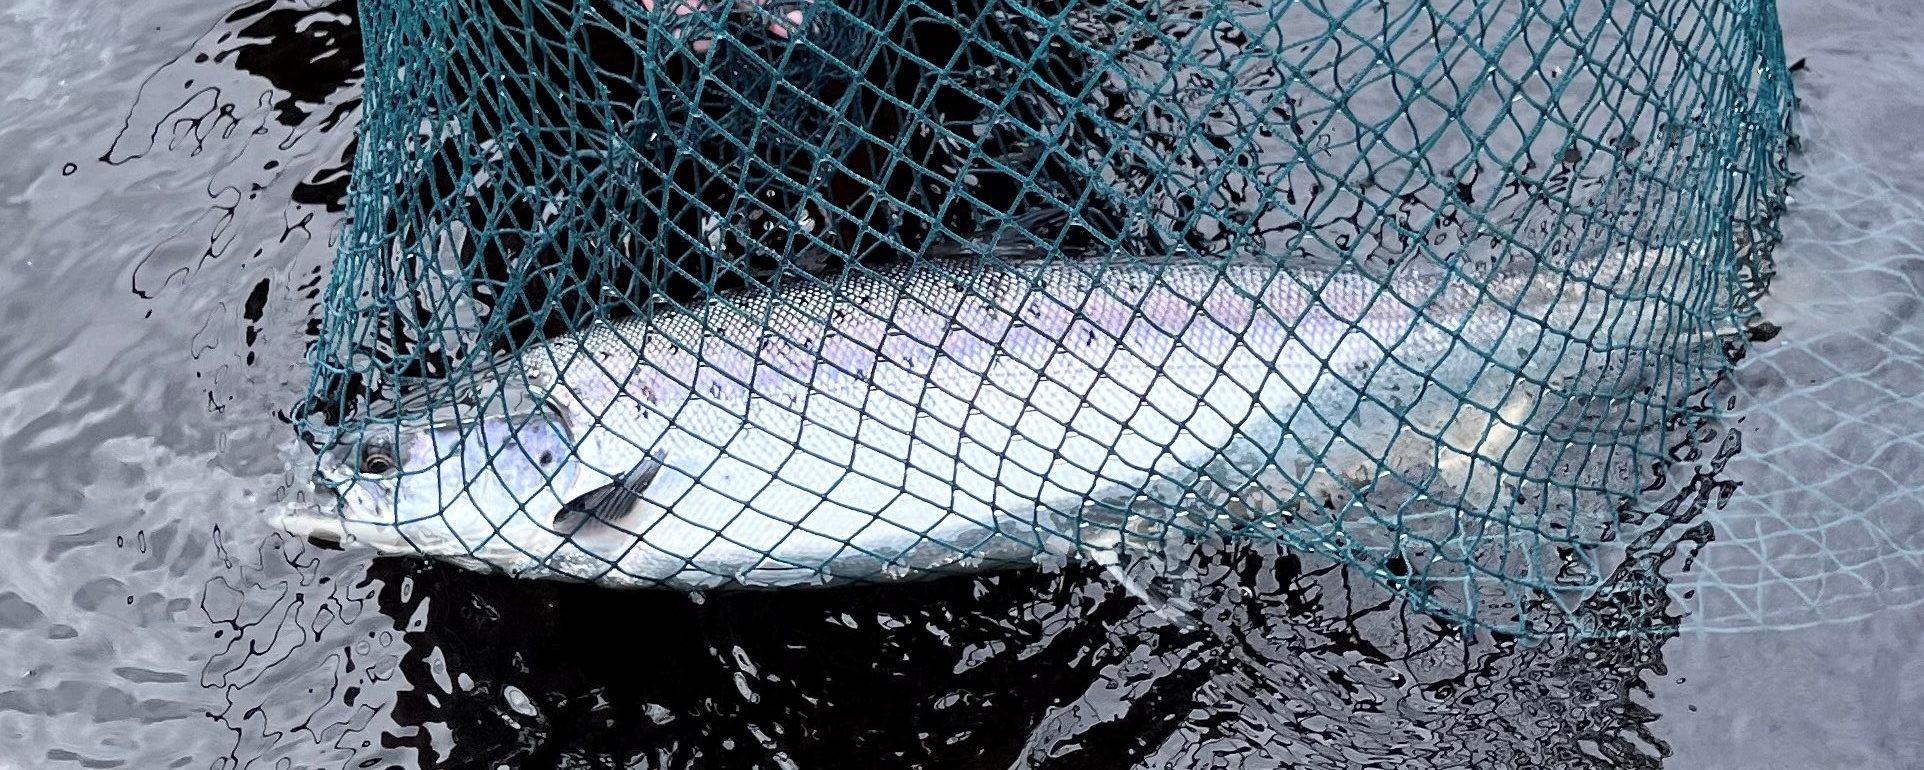 Miramichi Salmon Fishing June and Early July 2022